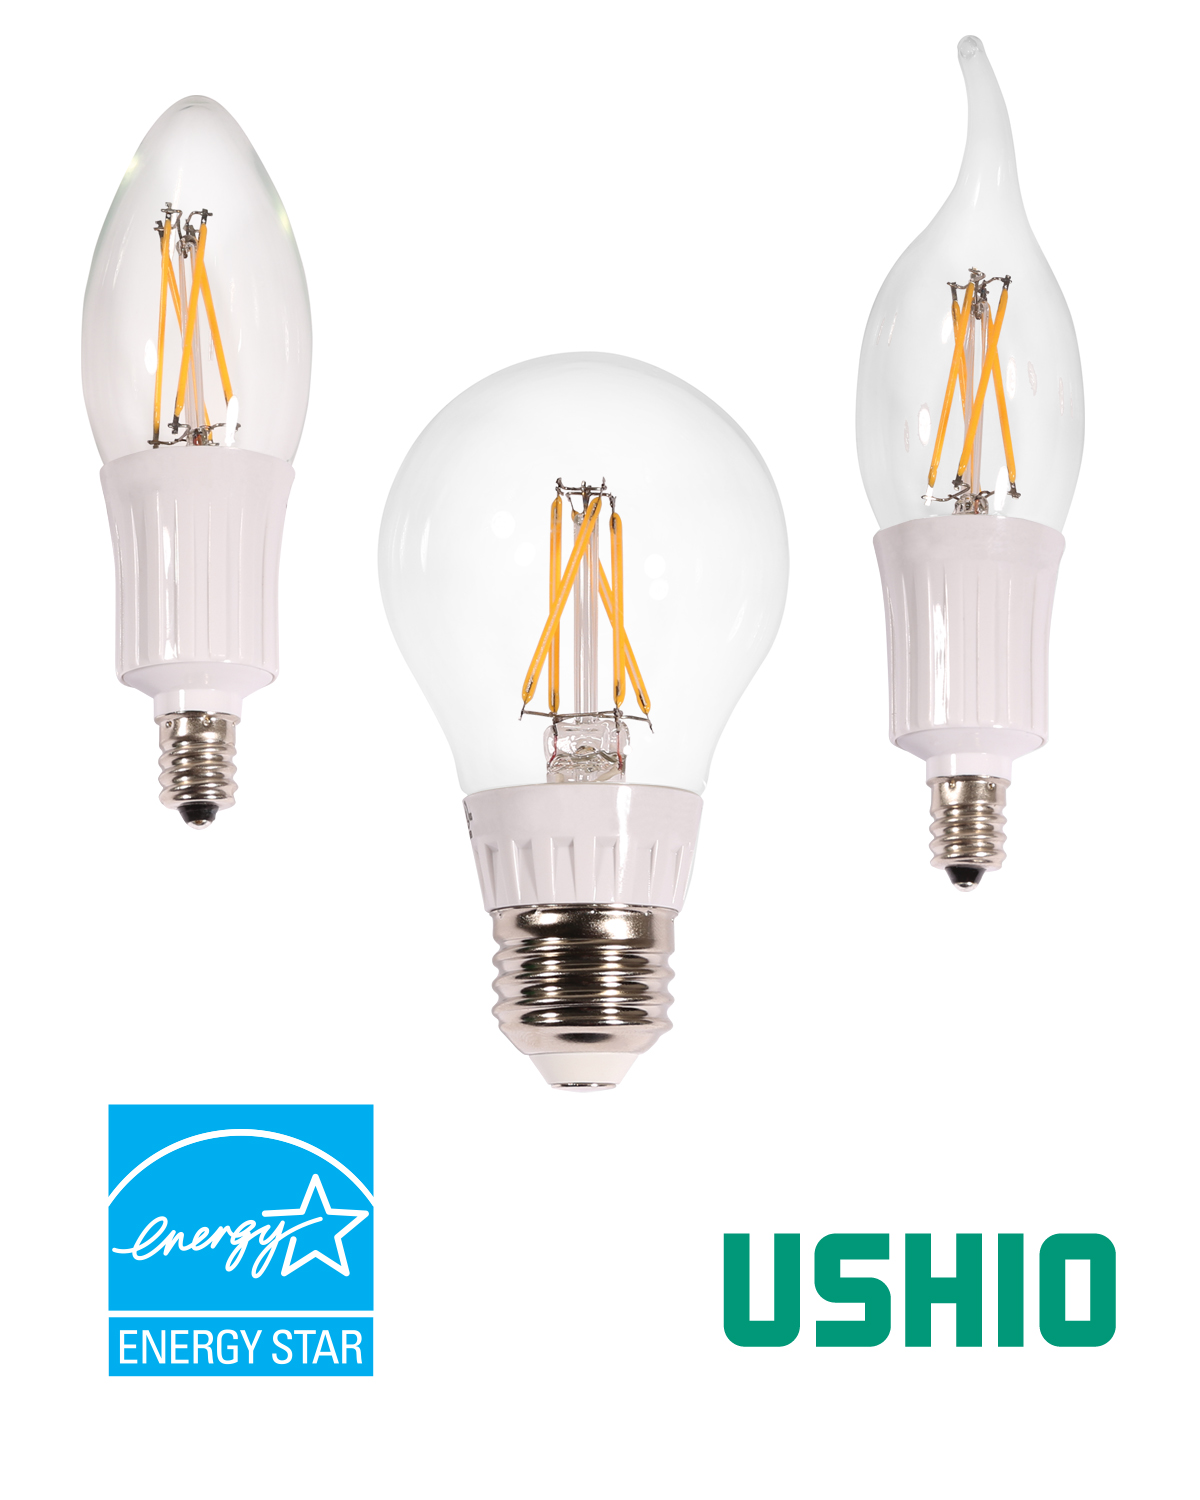 U-LED Decorative Filament LED Lamps